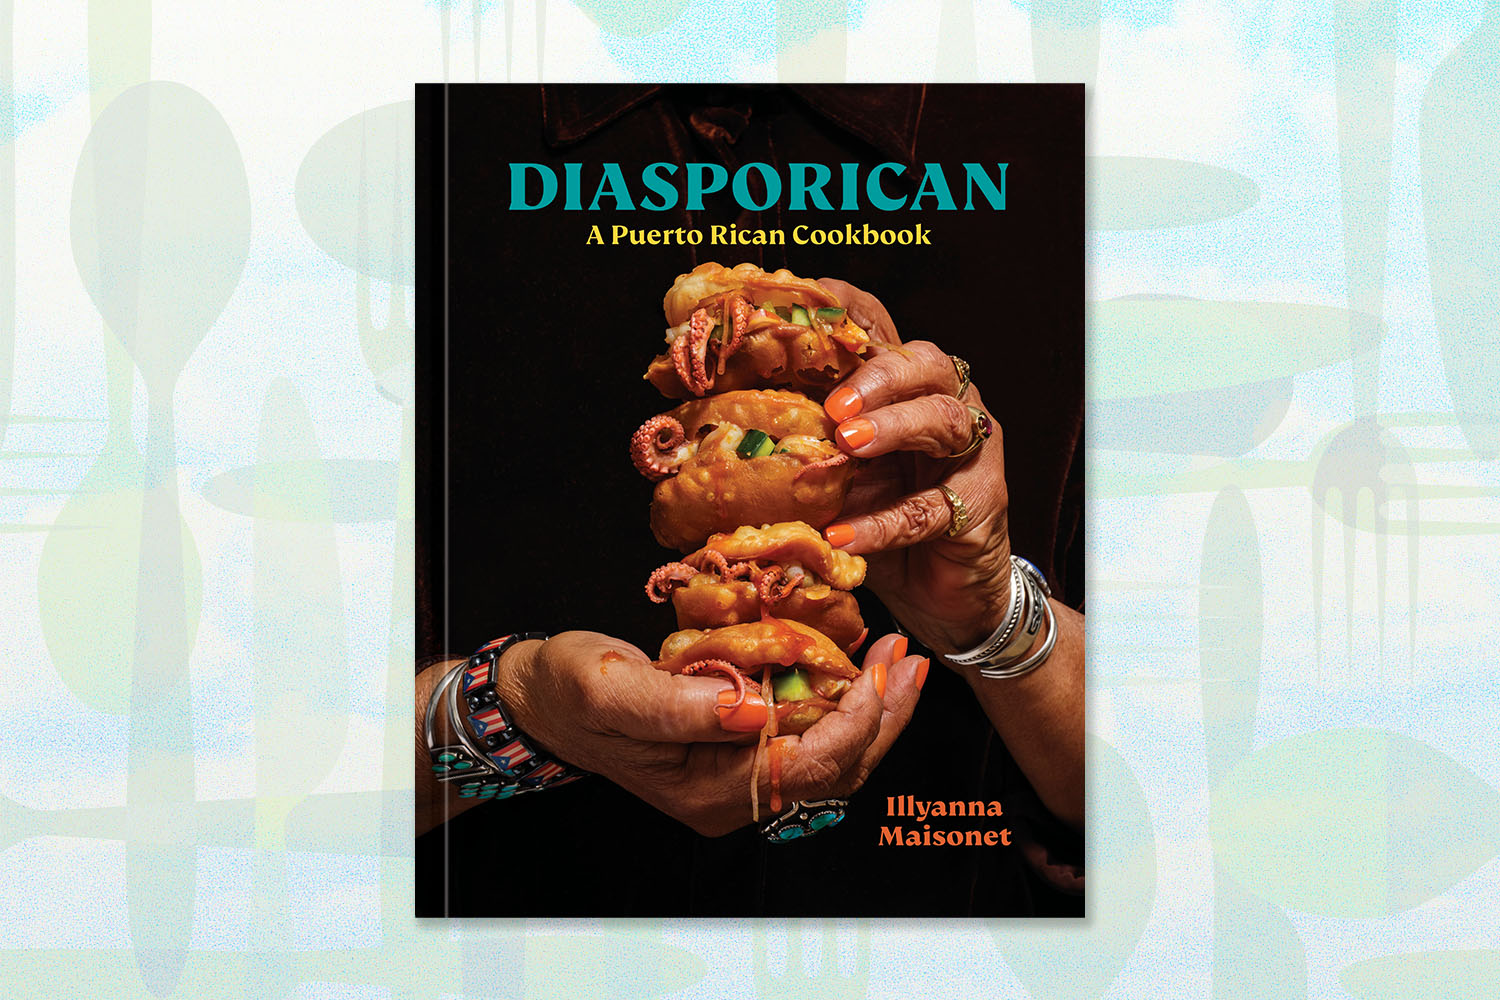 diasporican cookbook by Illyanna Maisonet